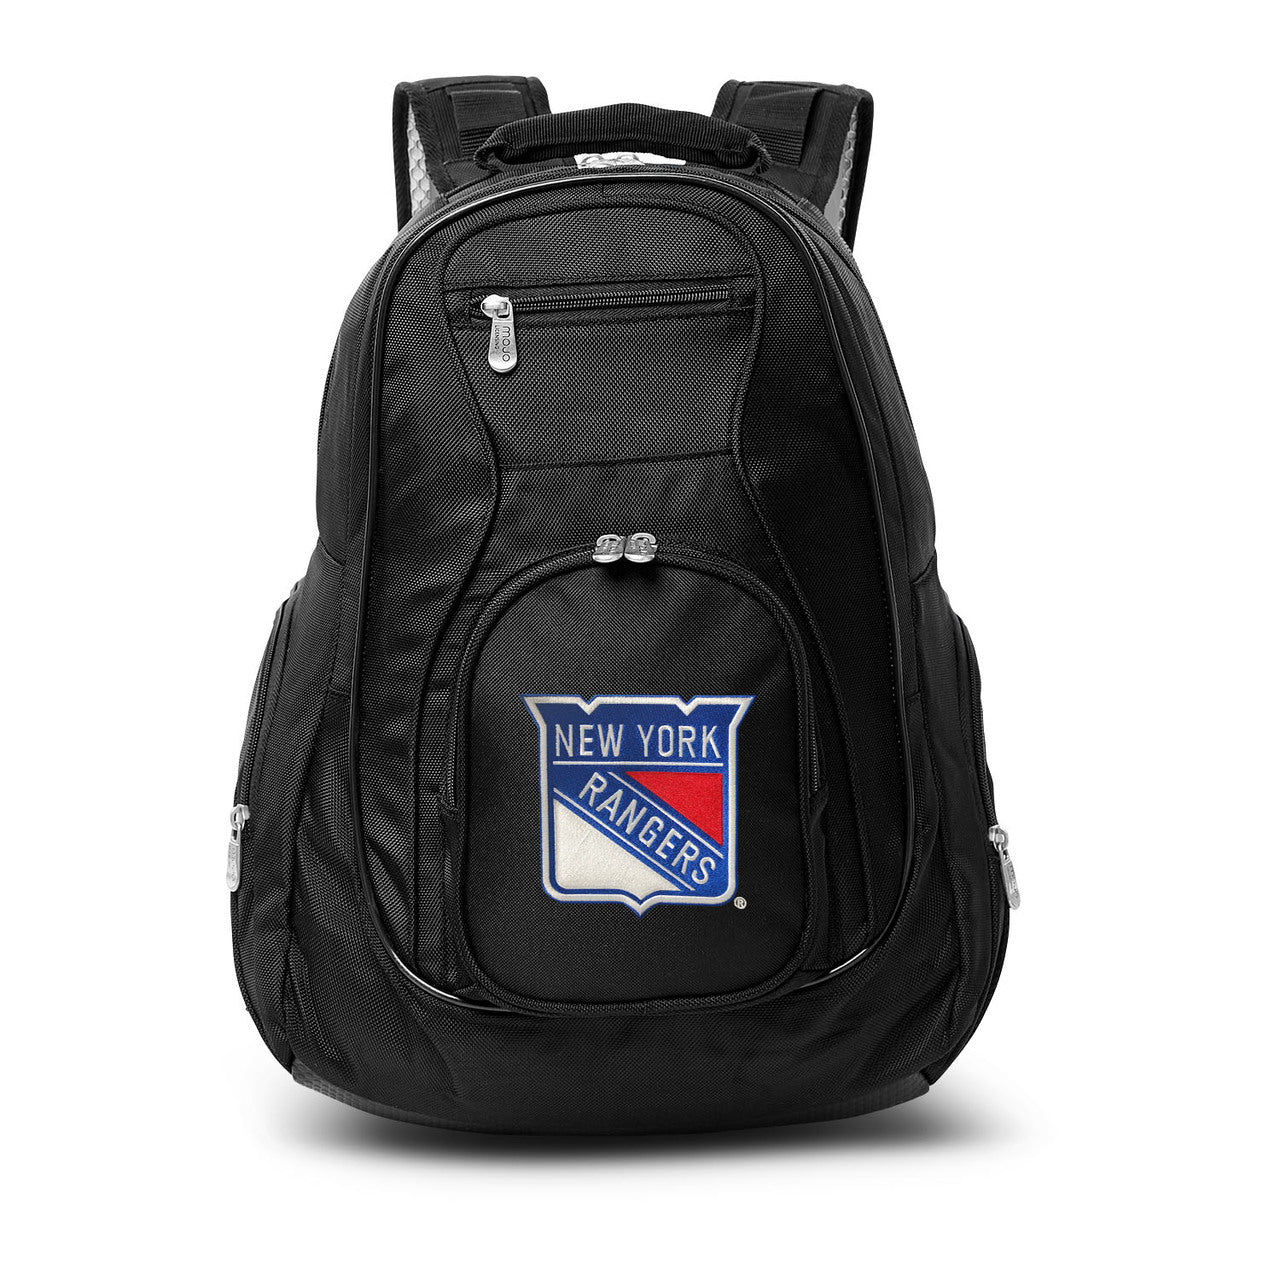 New York Rangers Laptop Backpack Black